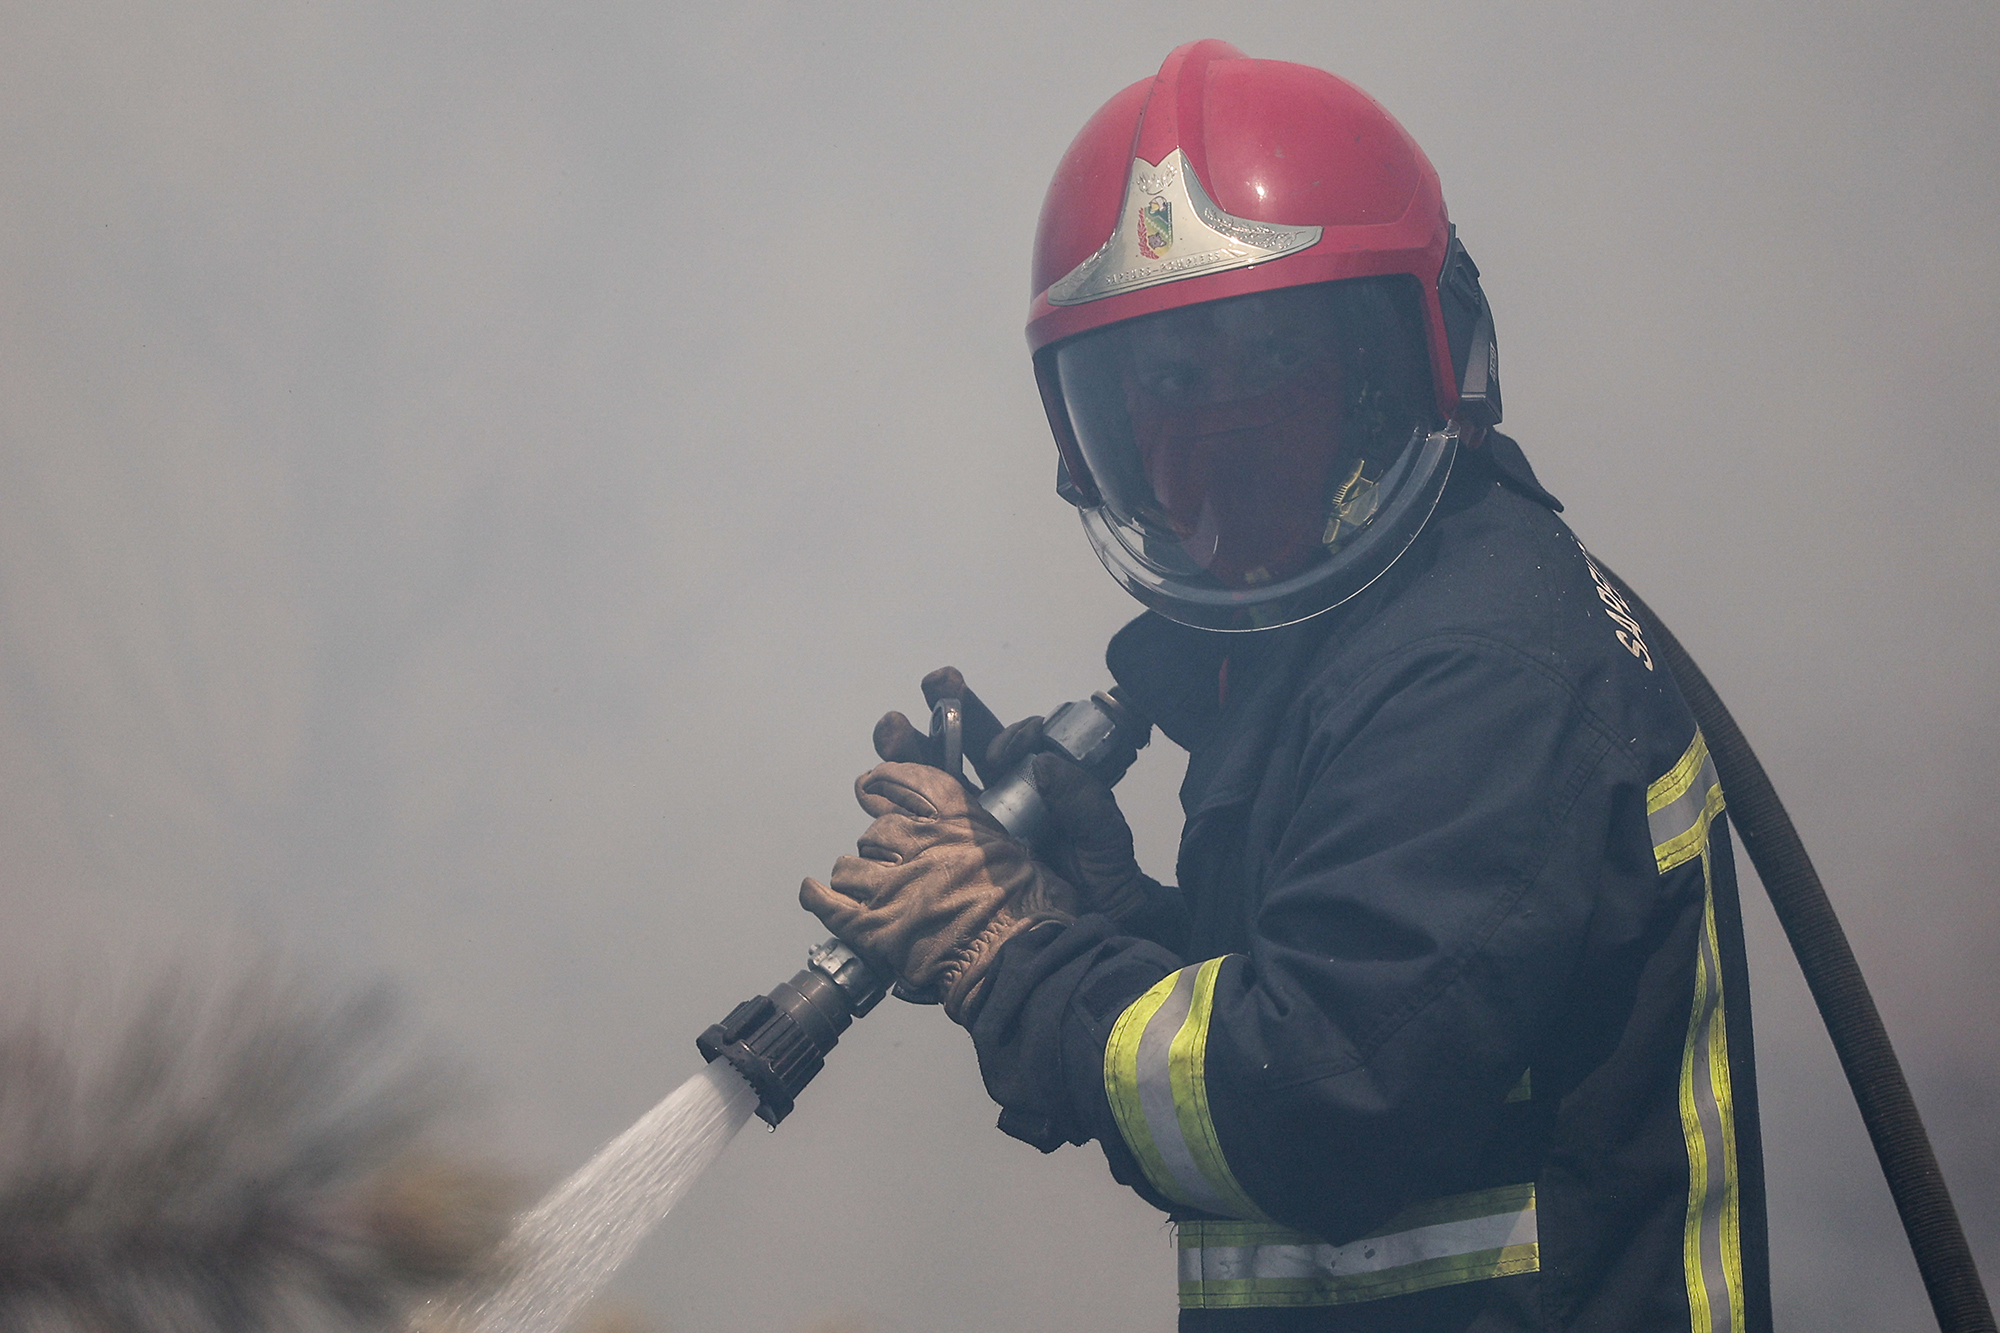 Feuerwehrmann in der Nähe von Louchats in Gironde kämpft gegen die Flammen (Bild: Thibaud Moritz/AFP)